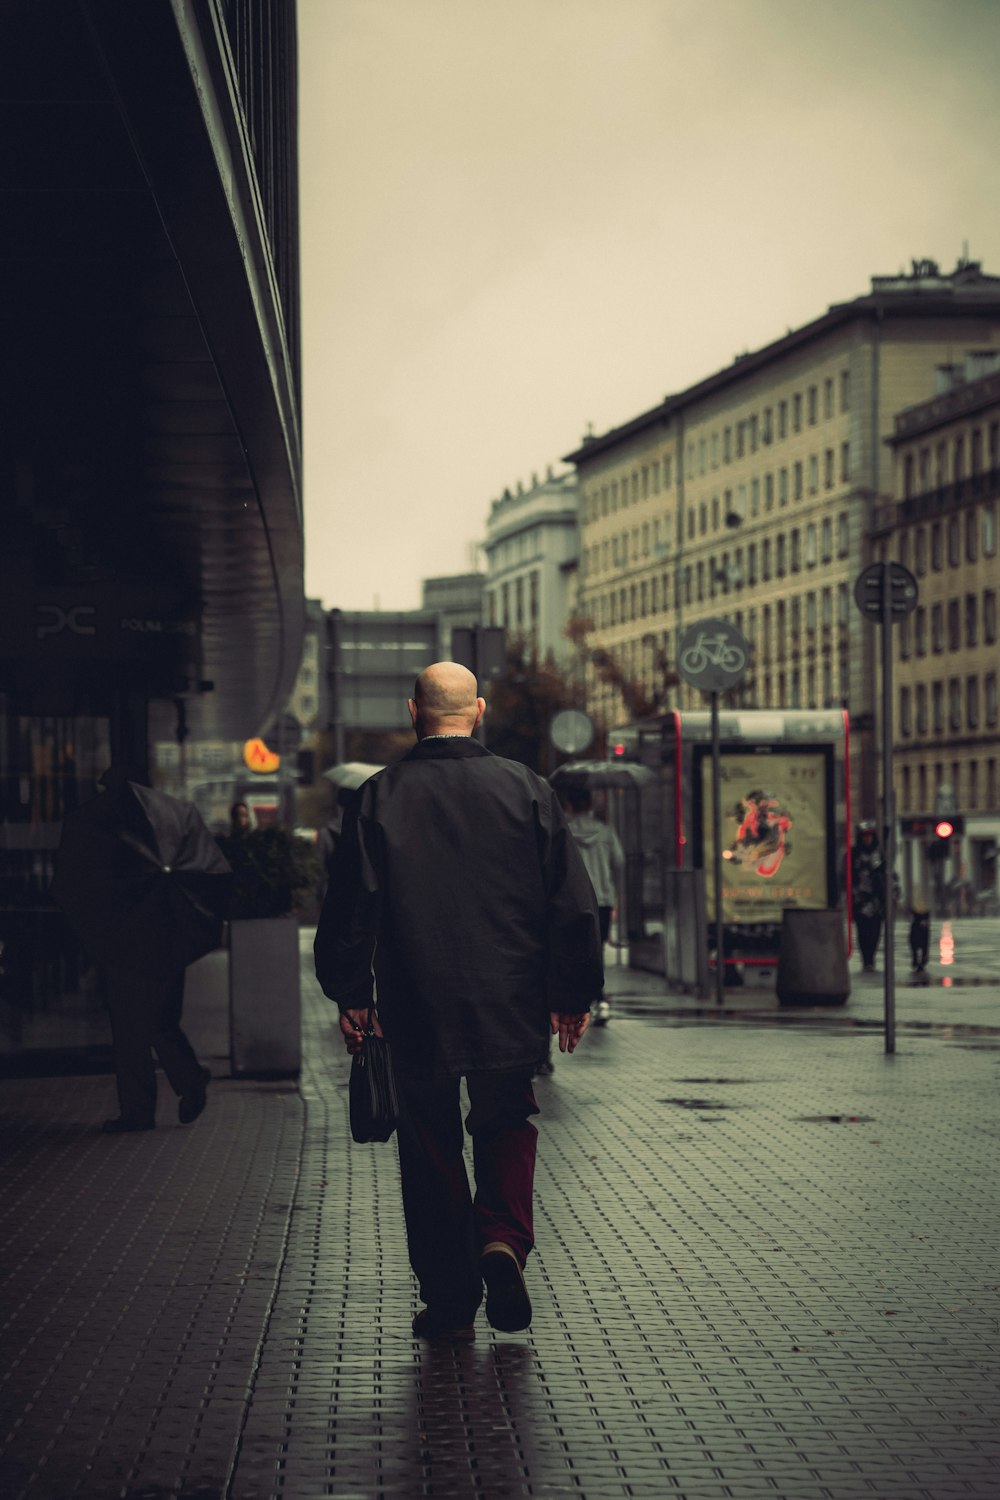 a man walking down a sidewalk